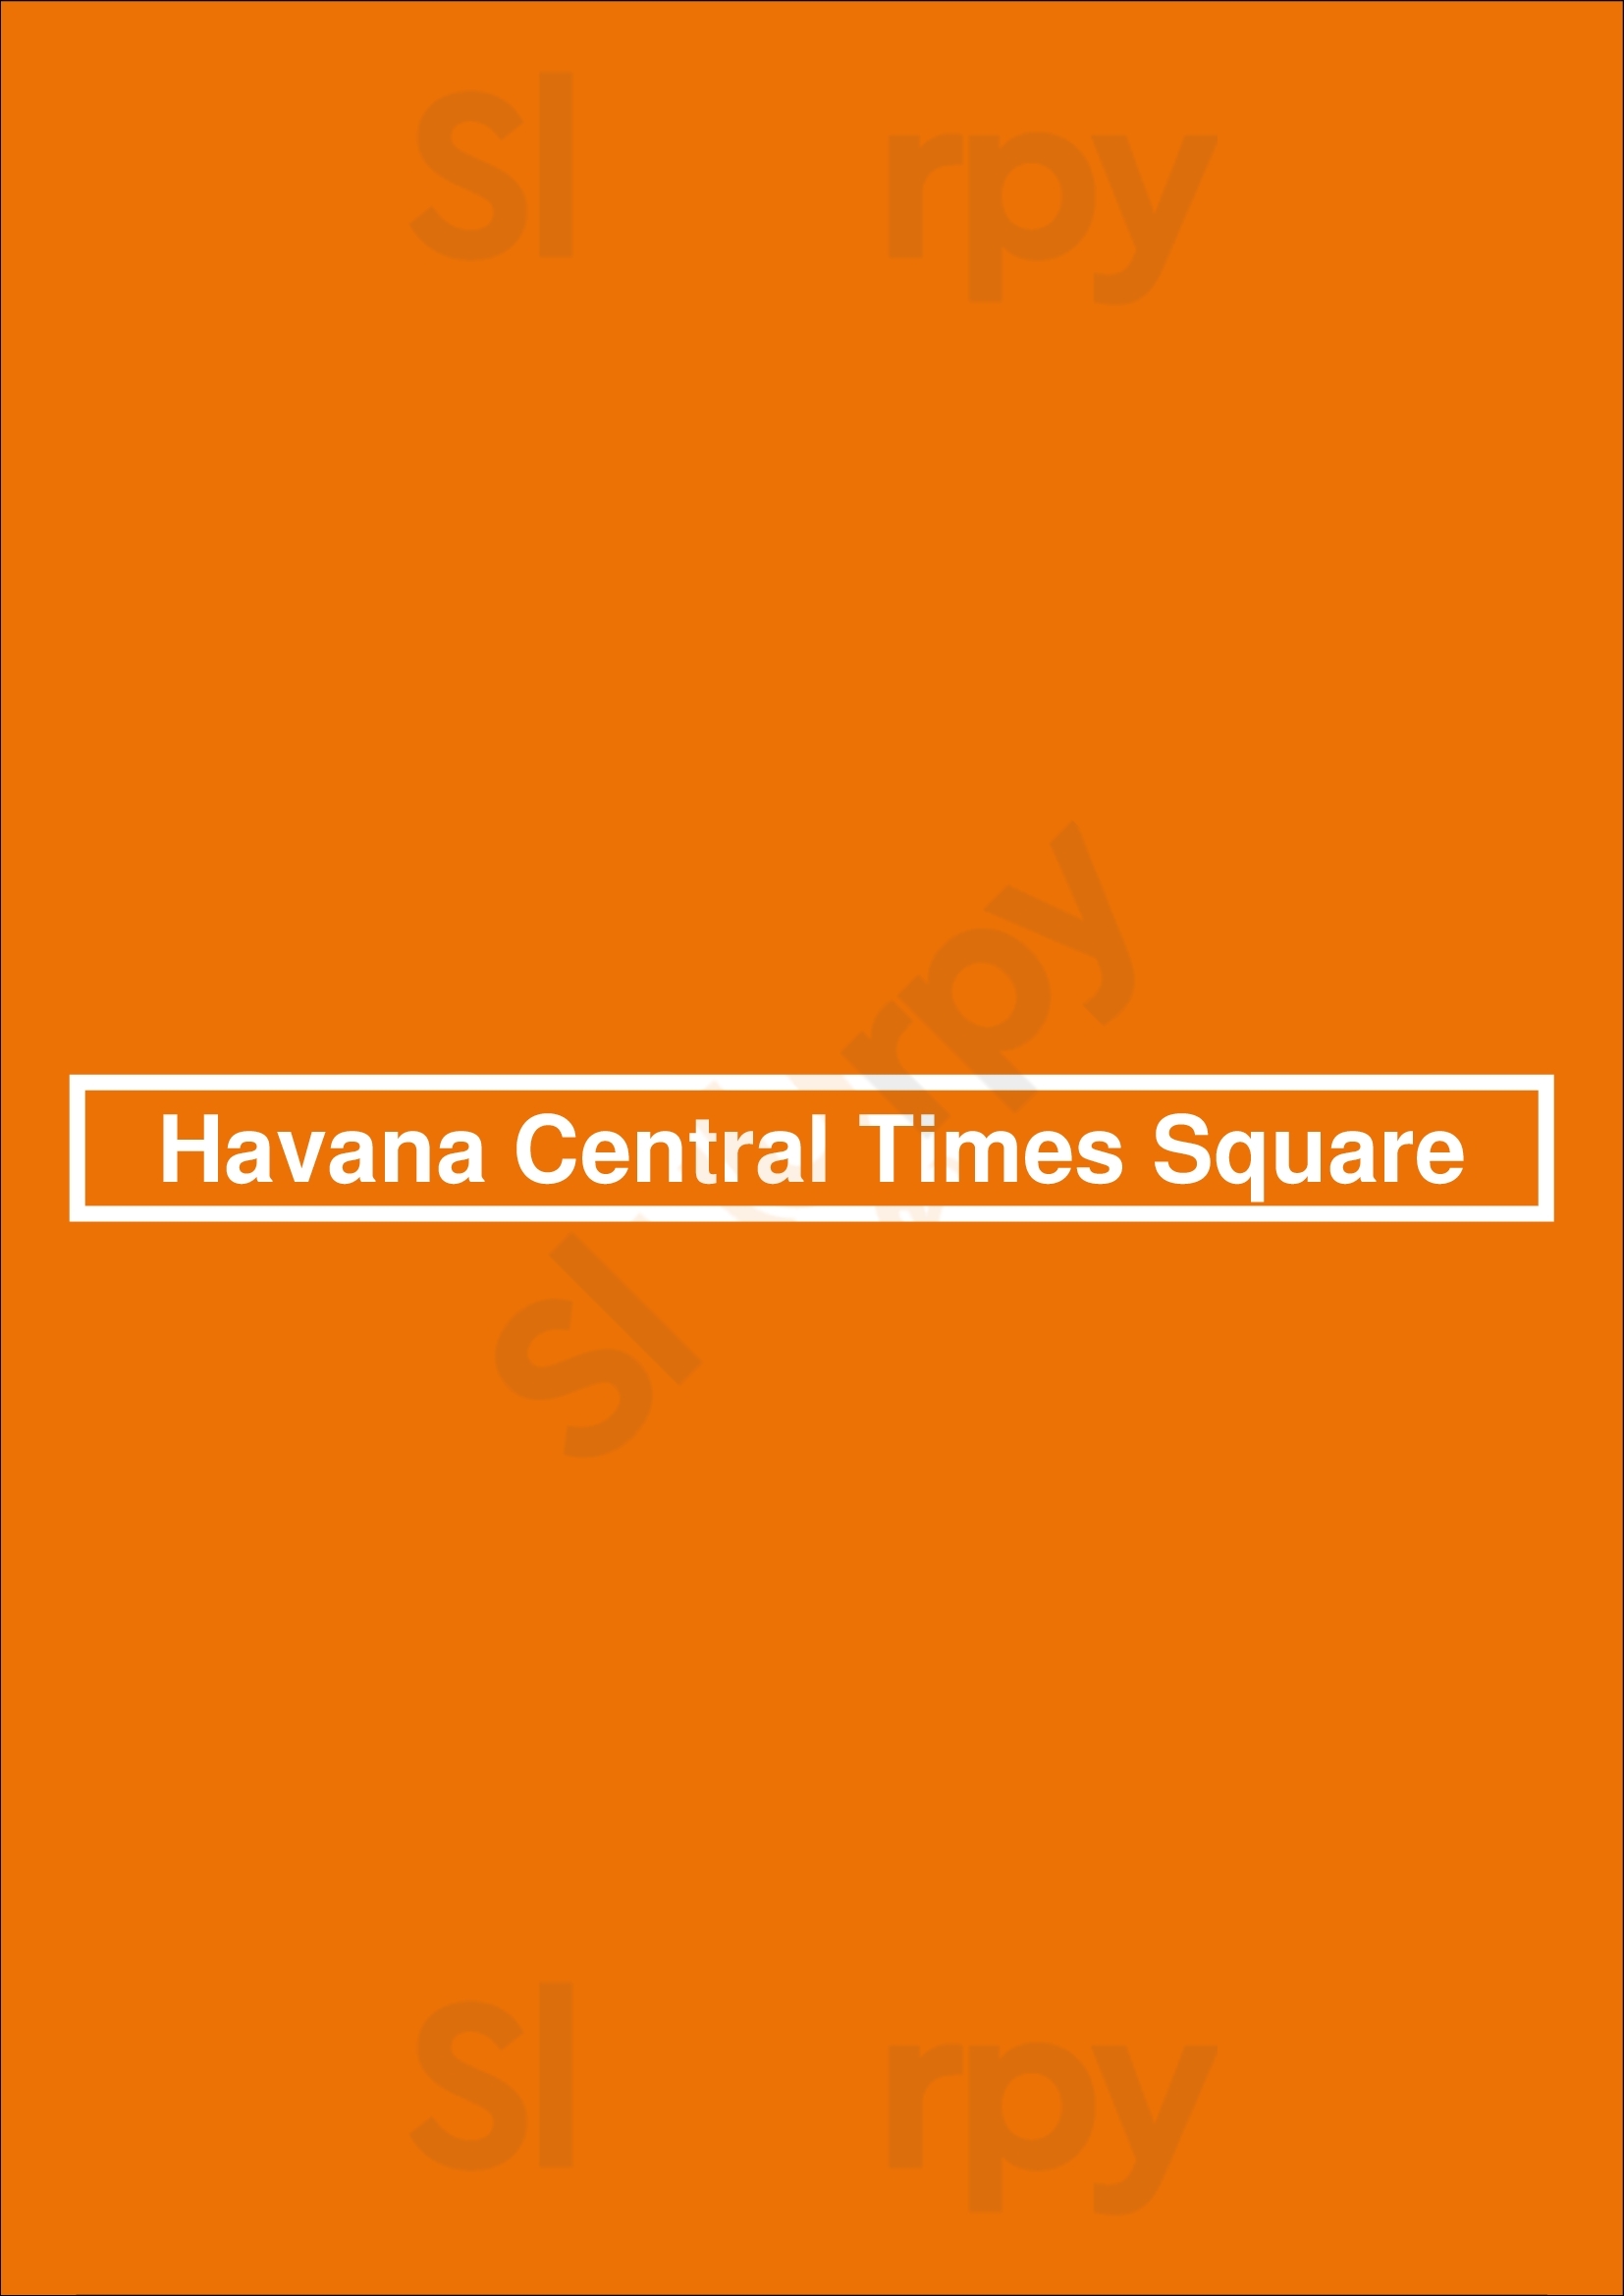 Havana Central Times Square New York City Menu - 1